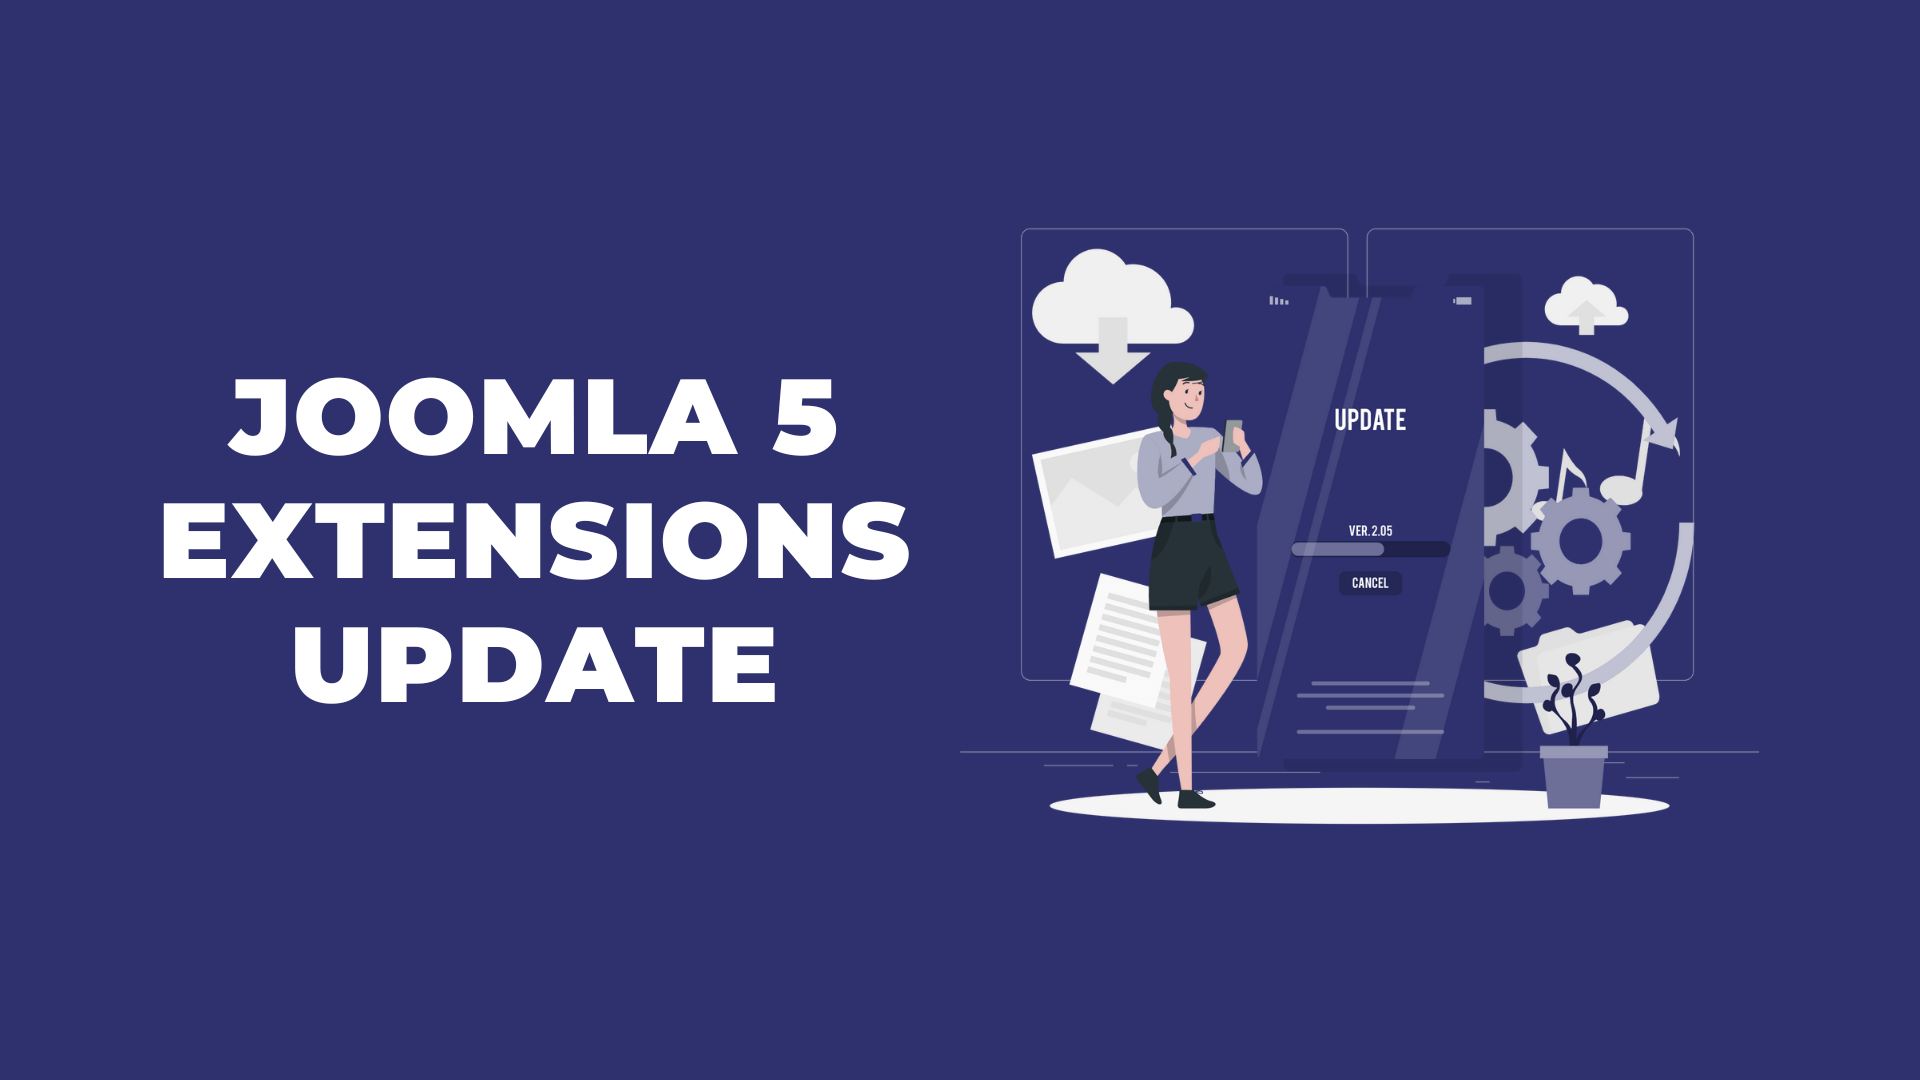 joomla 5 extensions update